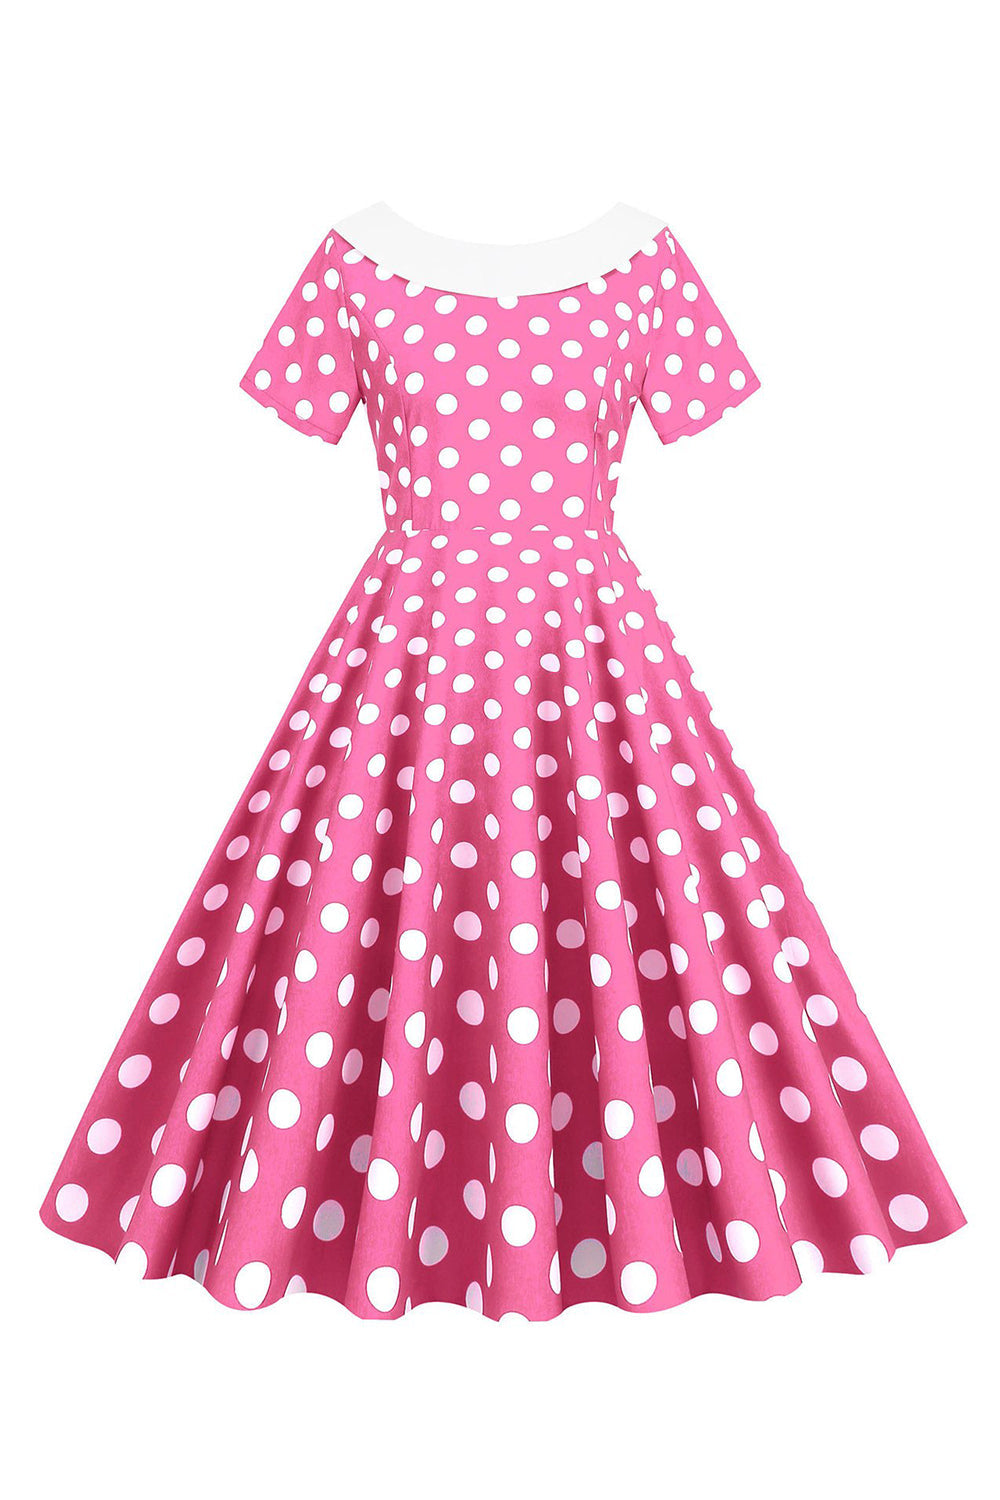 Rosa polka prikker båthals 1950-tallskjole med sløyfeknute